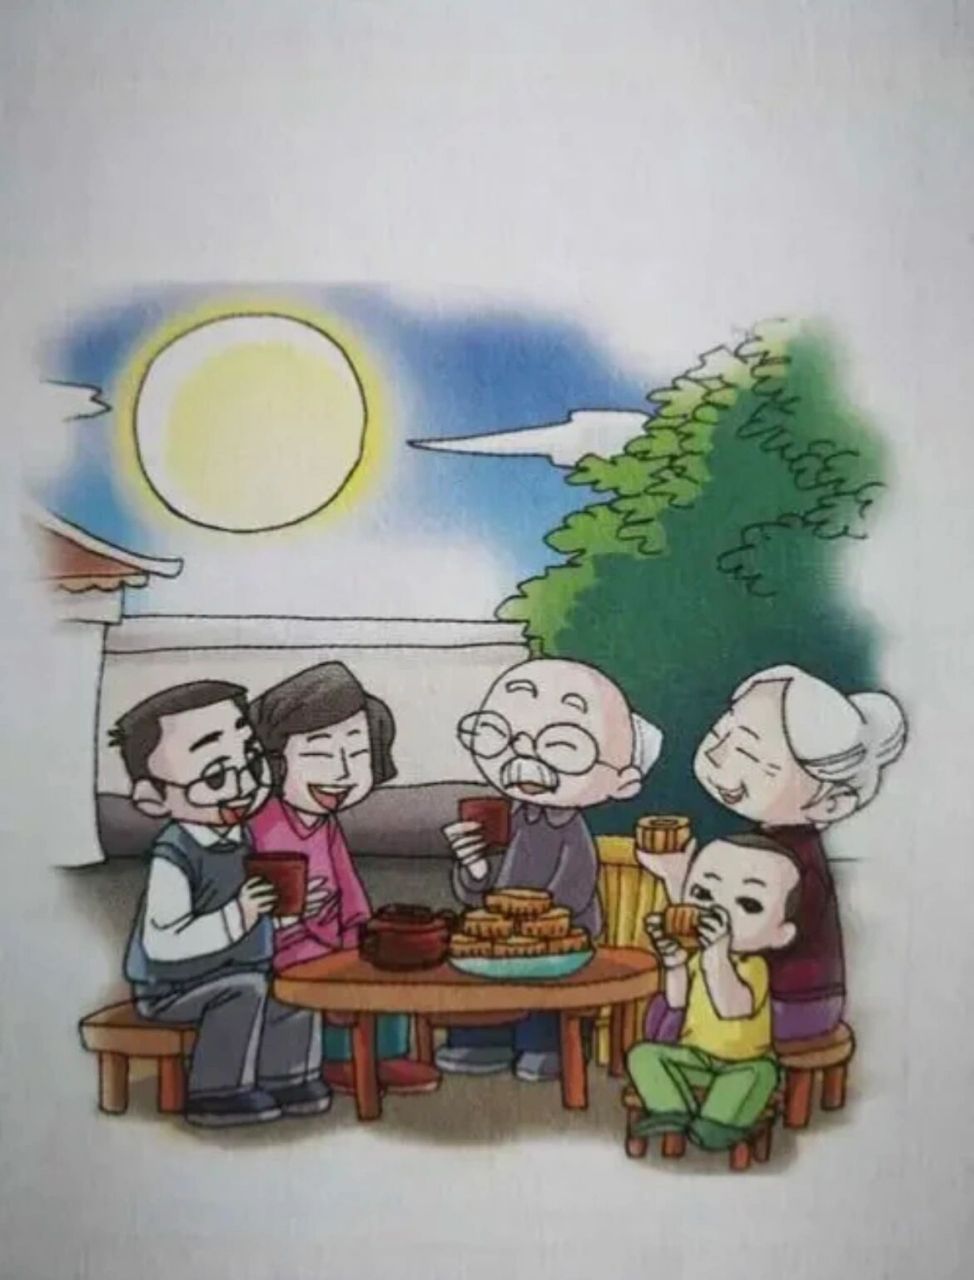 中秋赏月看图写话 范文一 中秋节的晚上,明明与家人在公园里吃月饼